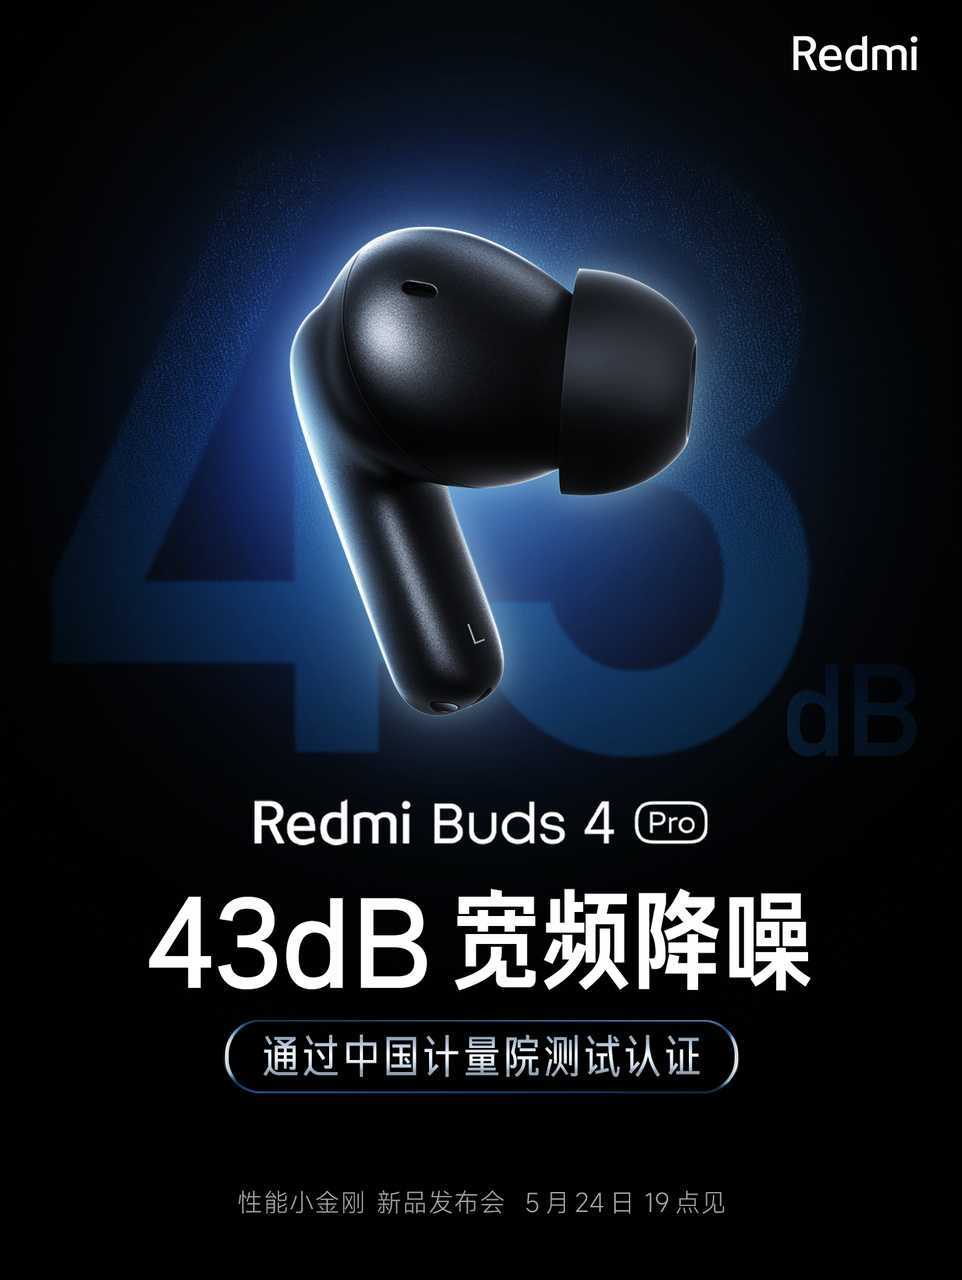 Xiaomi redmi note 2 - полный обзор мощного бюджетника - super g